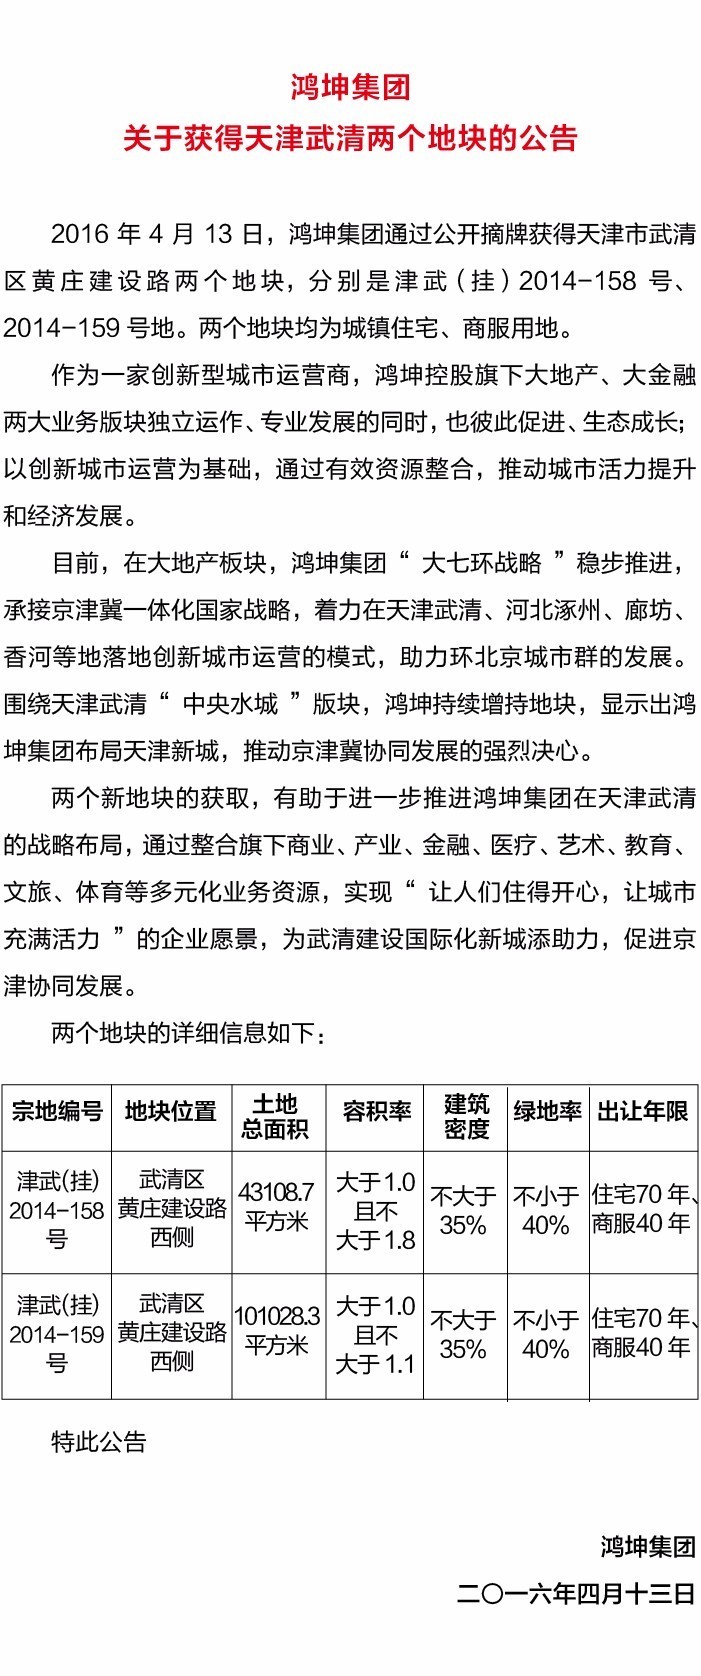 鸿坤集团关于获得天津武清两个地块的公告